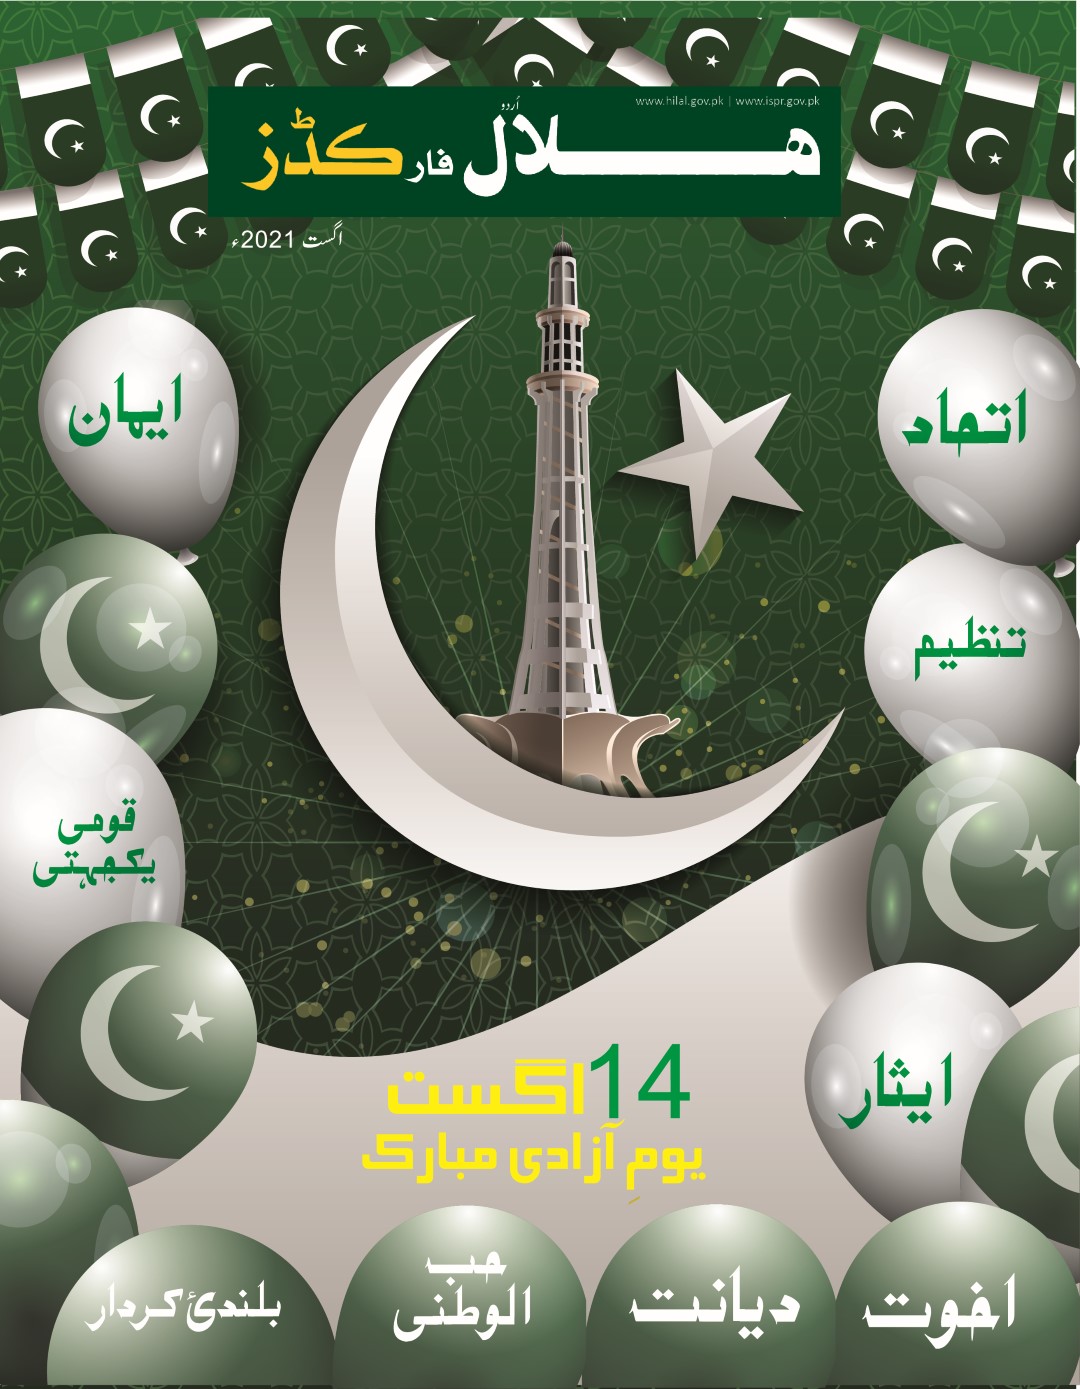 Hilal for Kids Urdu August 21